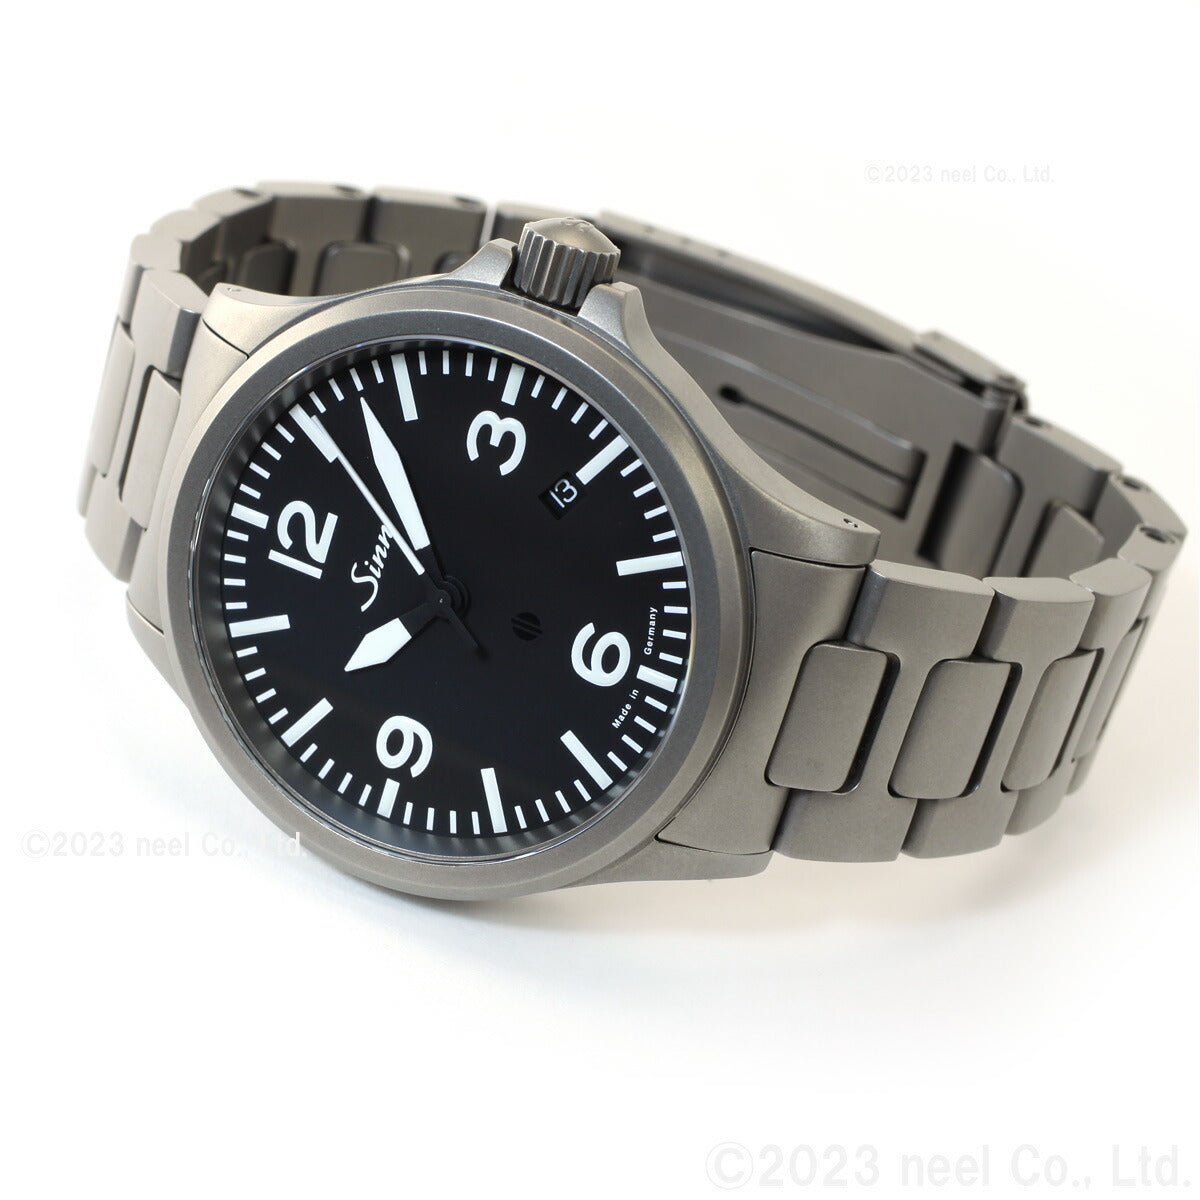 Sinn ジン 856.B 自動巻き 腕時計 メンズ Instrument Watches インストゥルメント ウォッチ ステンレスバンド ドイツ製【60回無金利ローン】